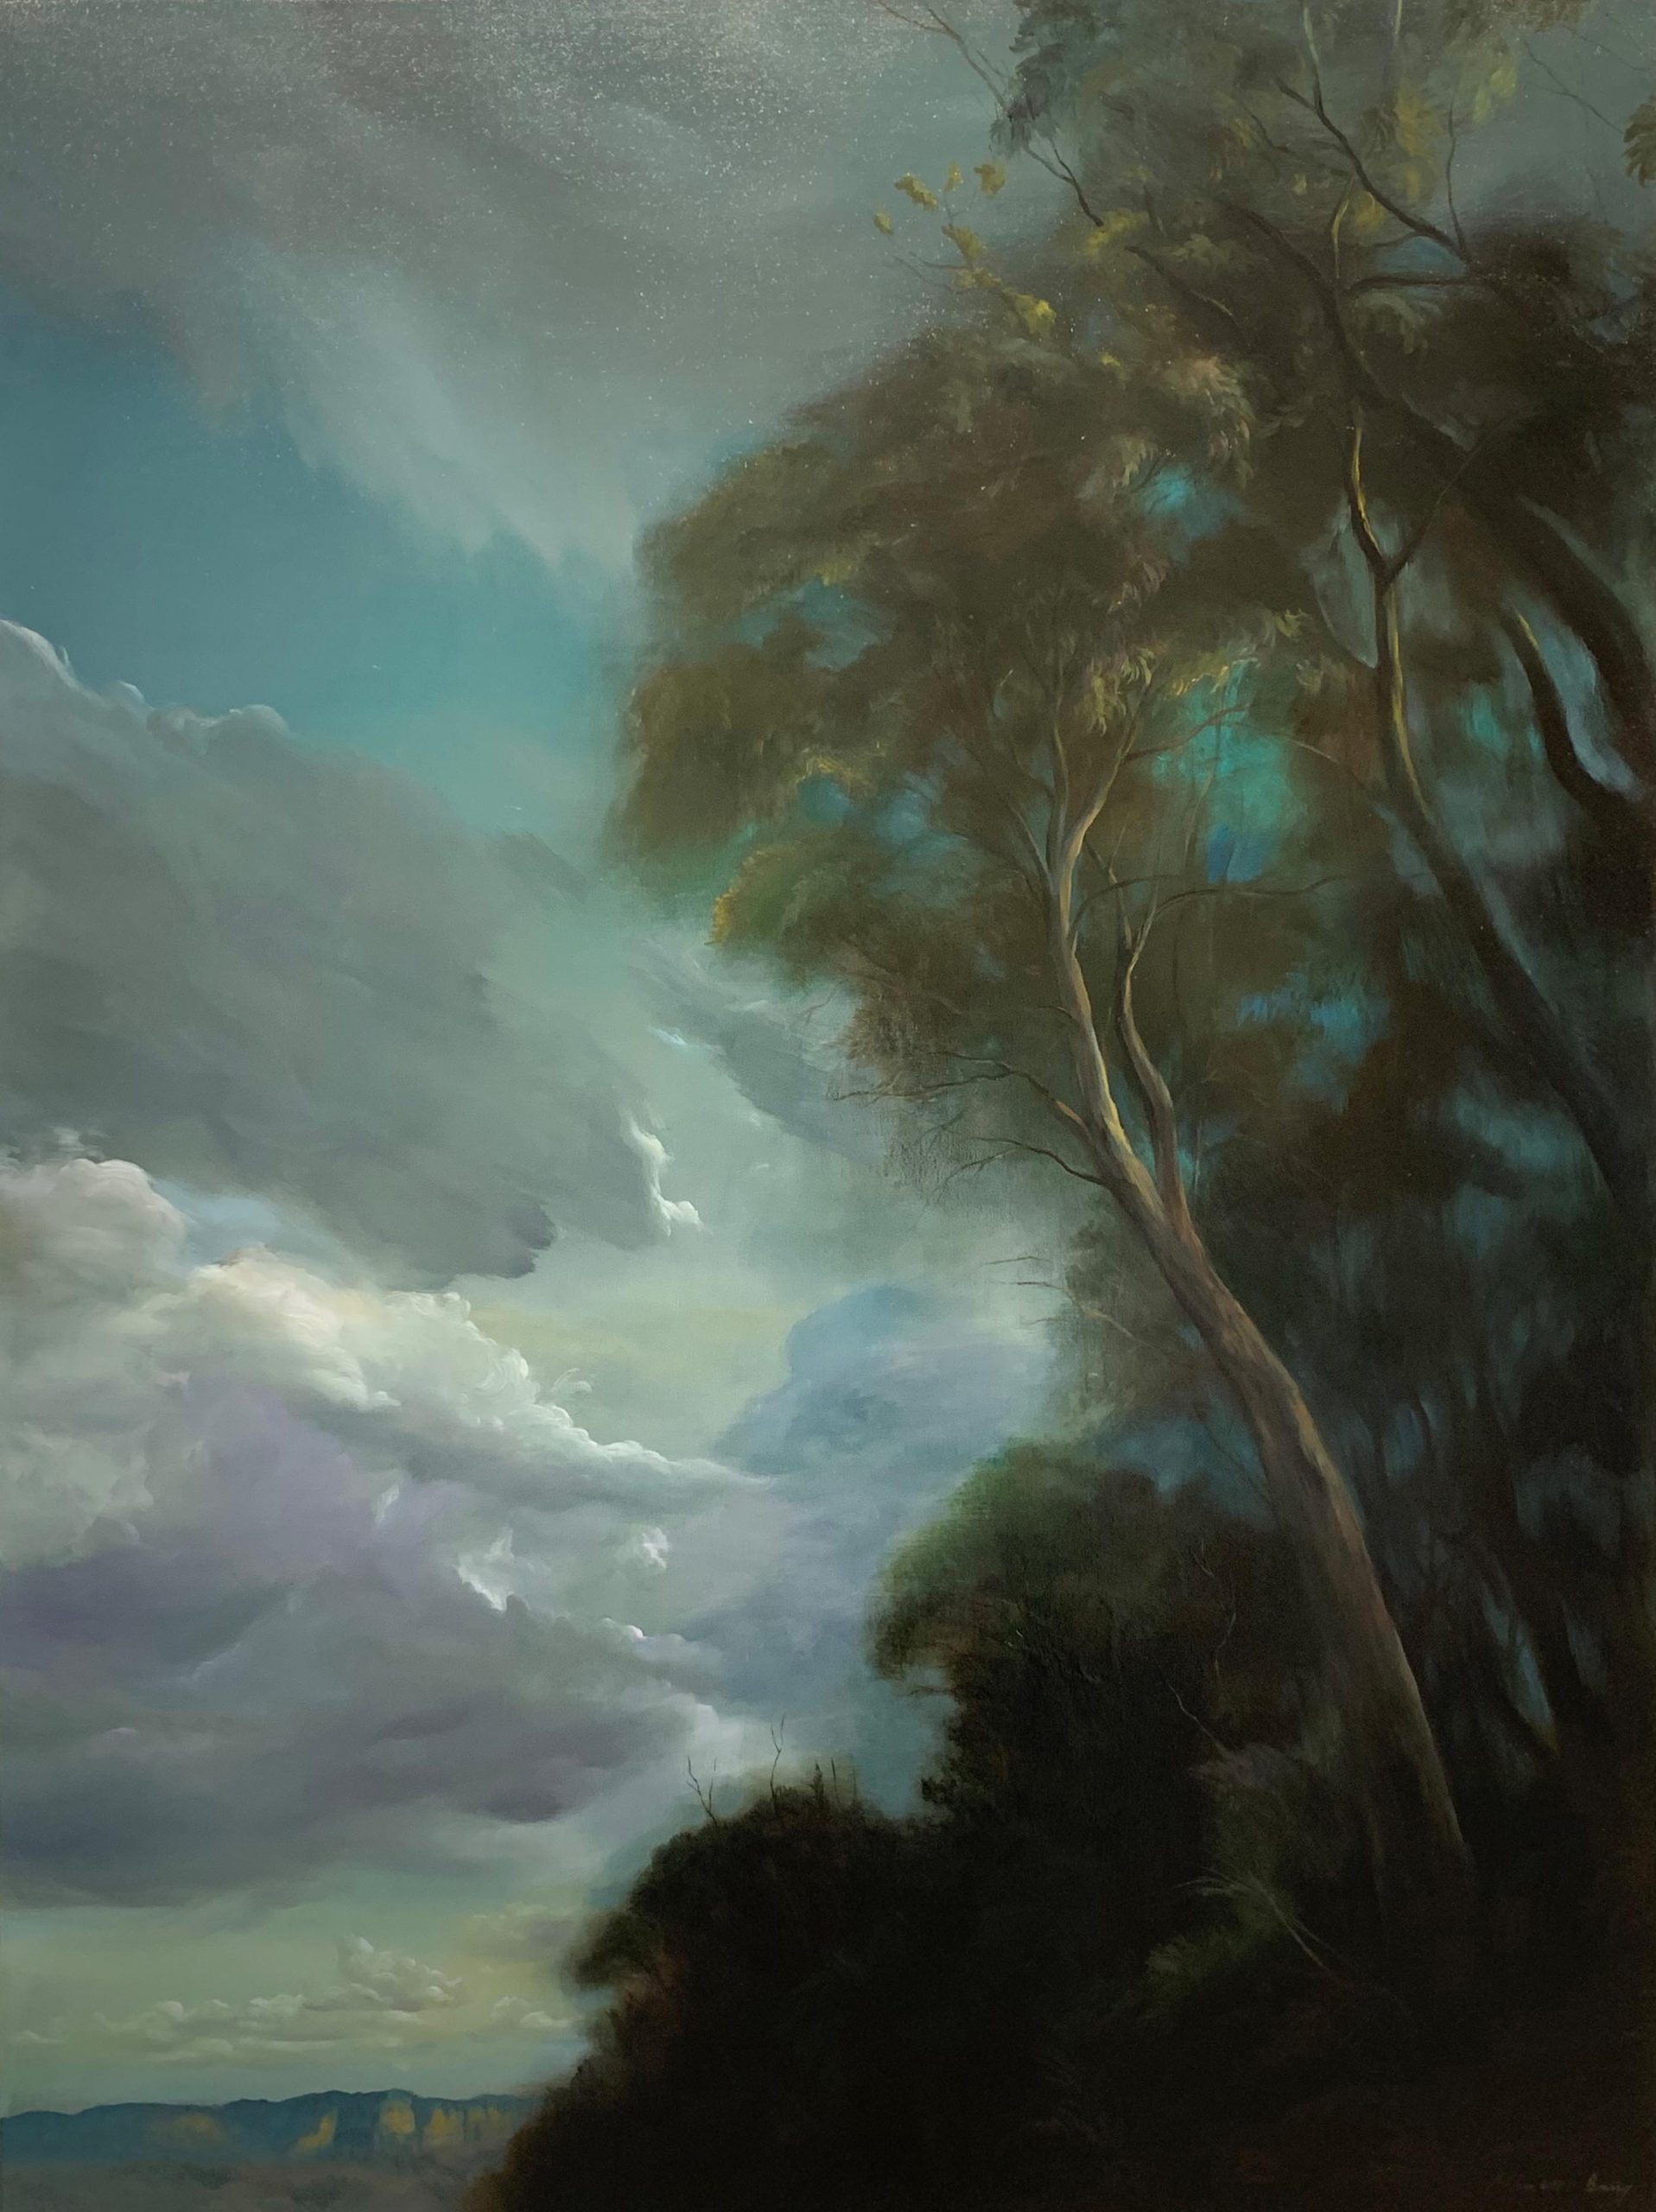 Min-Woo Bang 'Romantic Landscape' oil on linen 121 x 91cm $9900